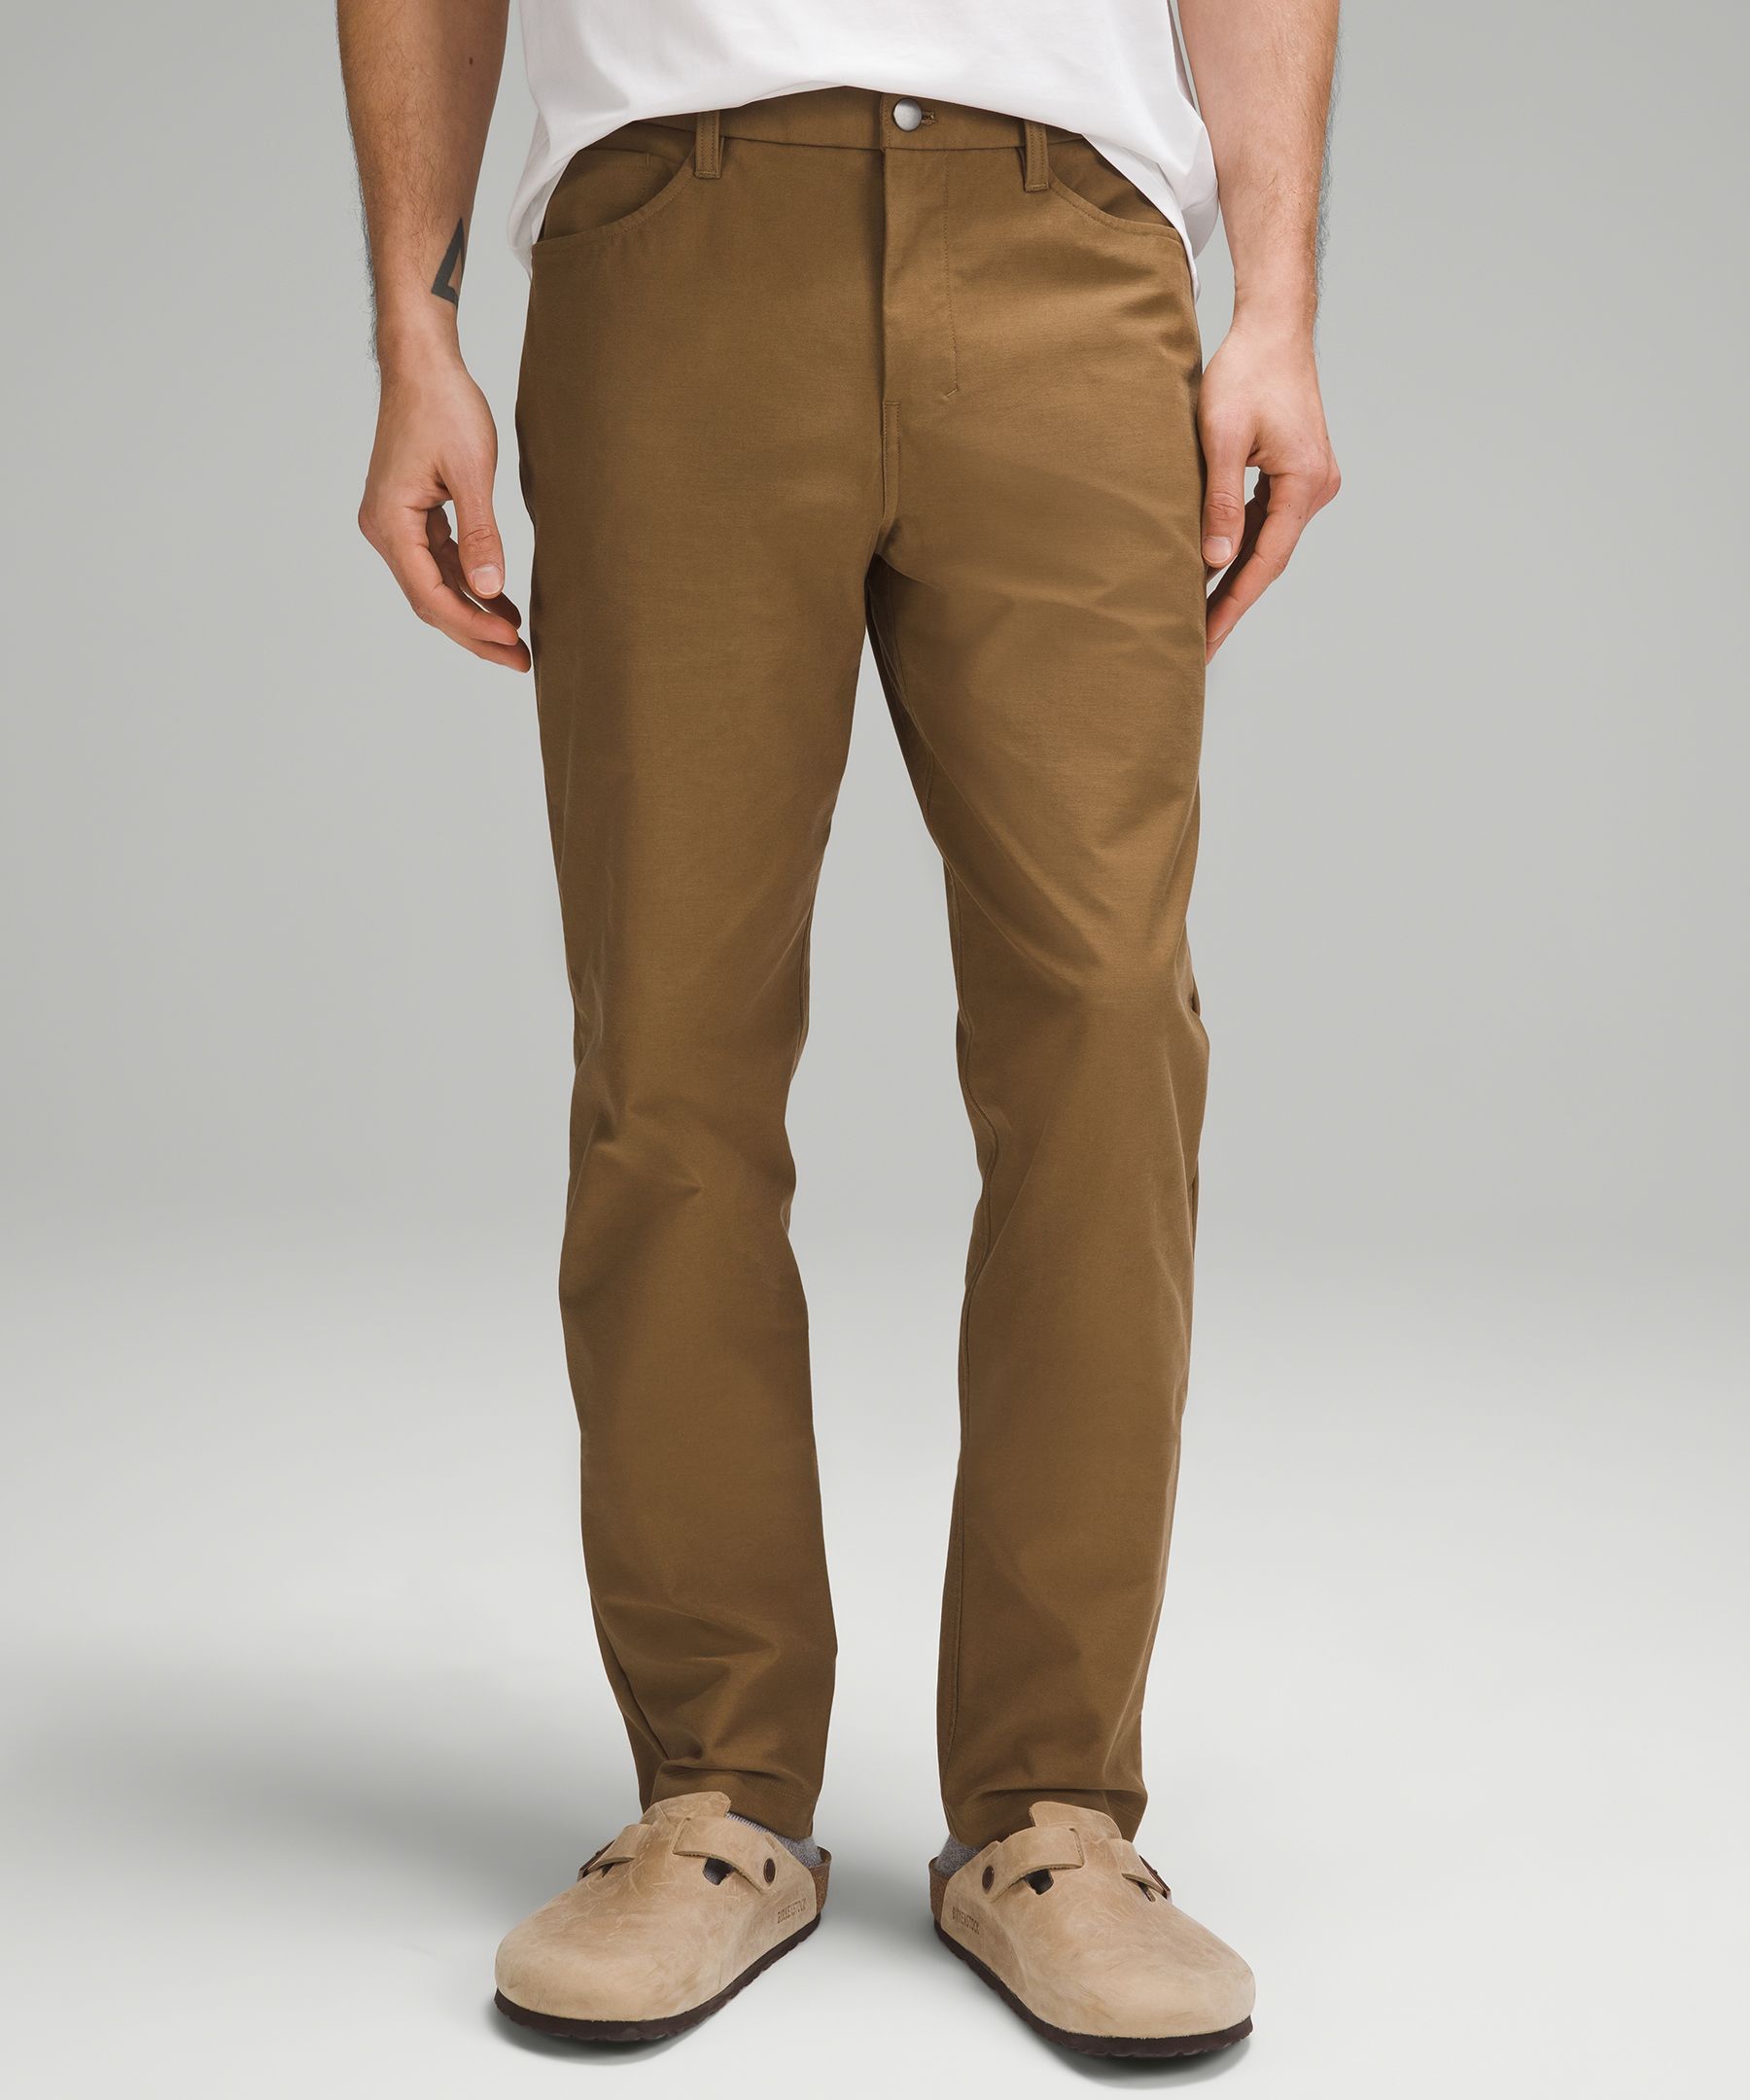 ABC Slim-Fit Trouser 32L *Stretch Cotton VersaTwill, Men's Trousers